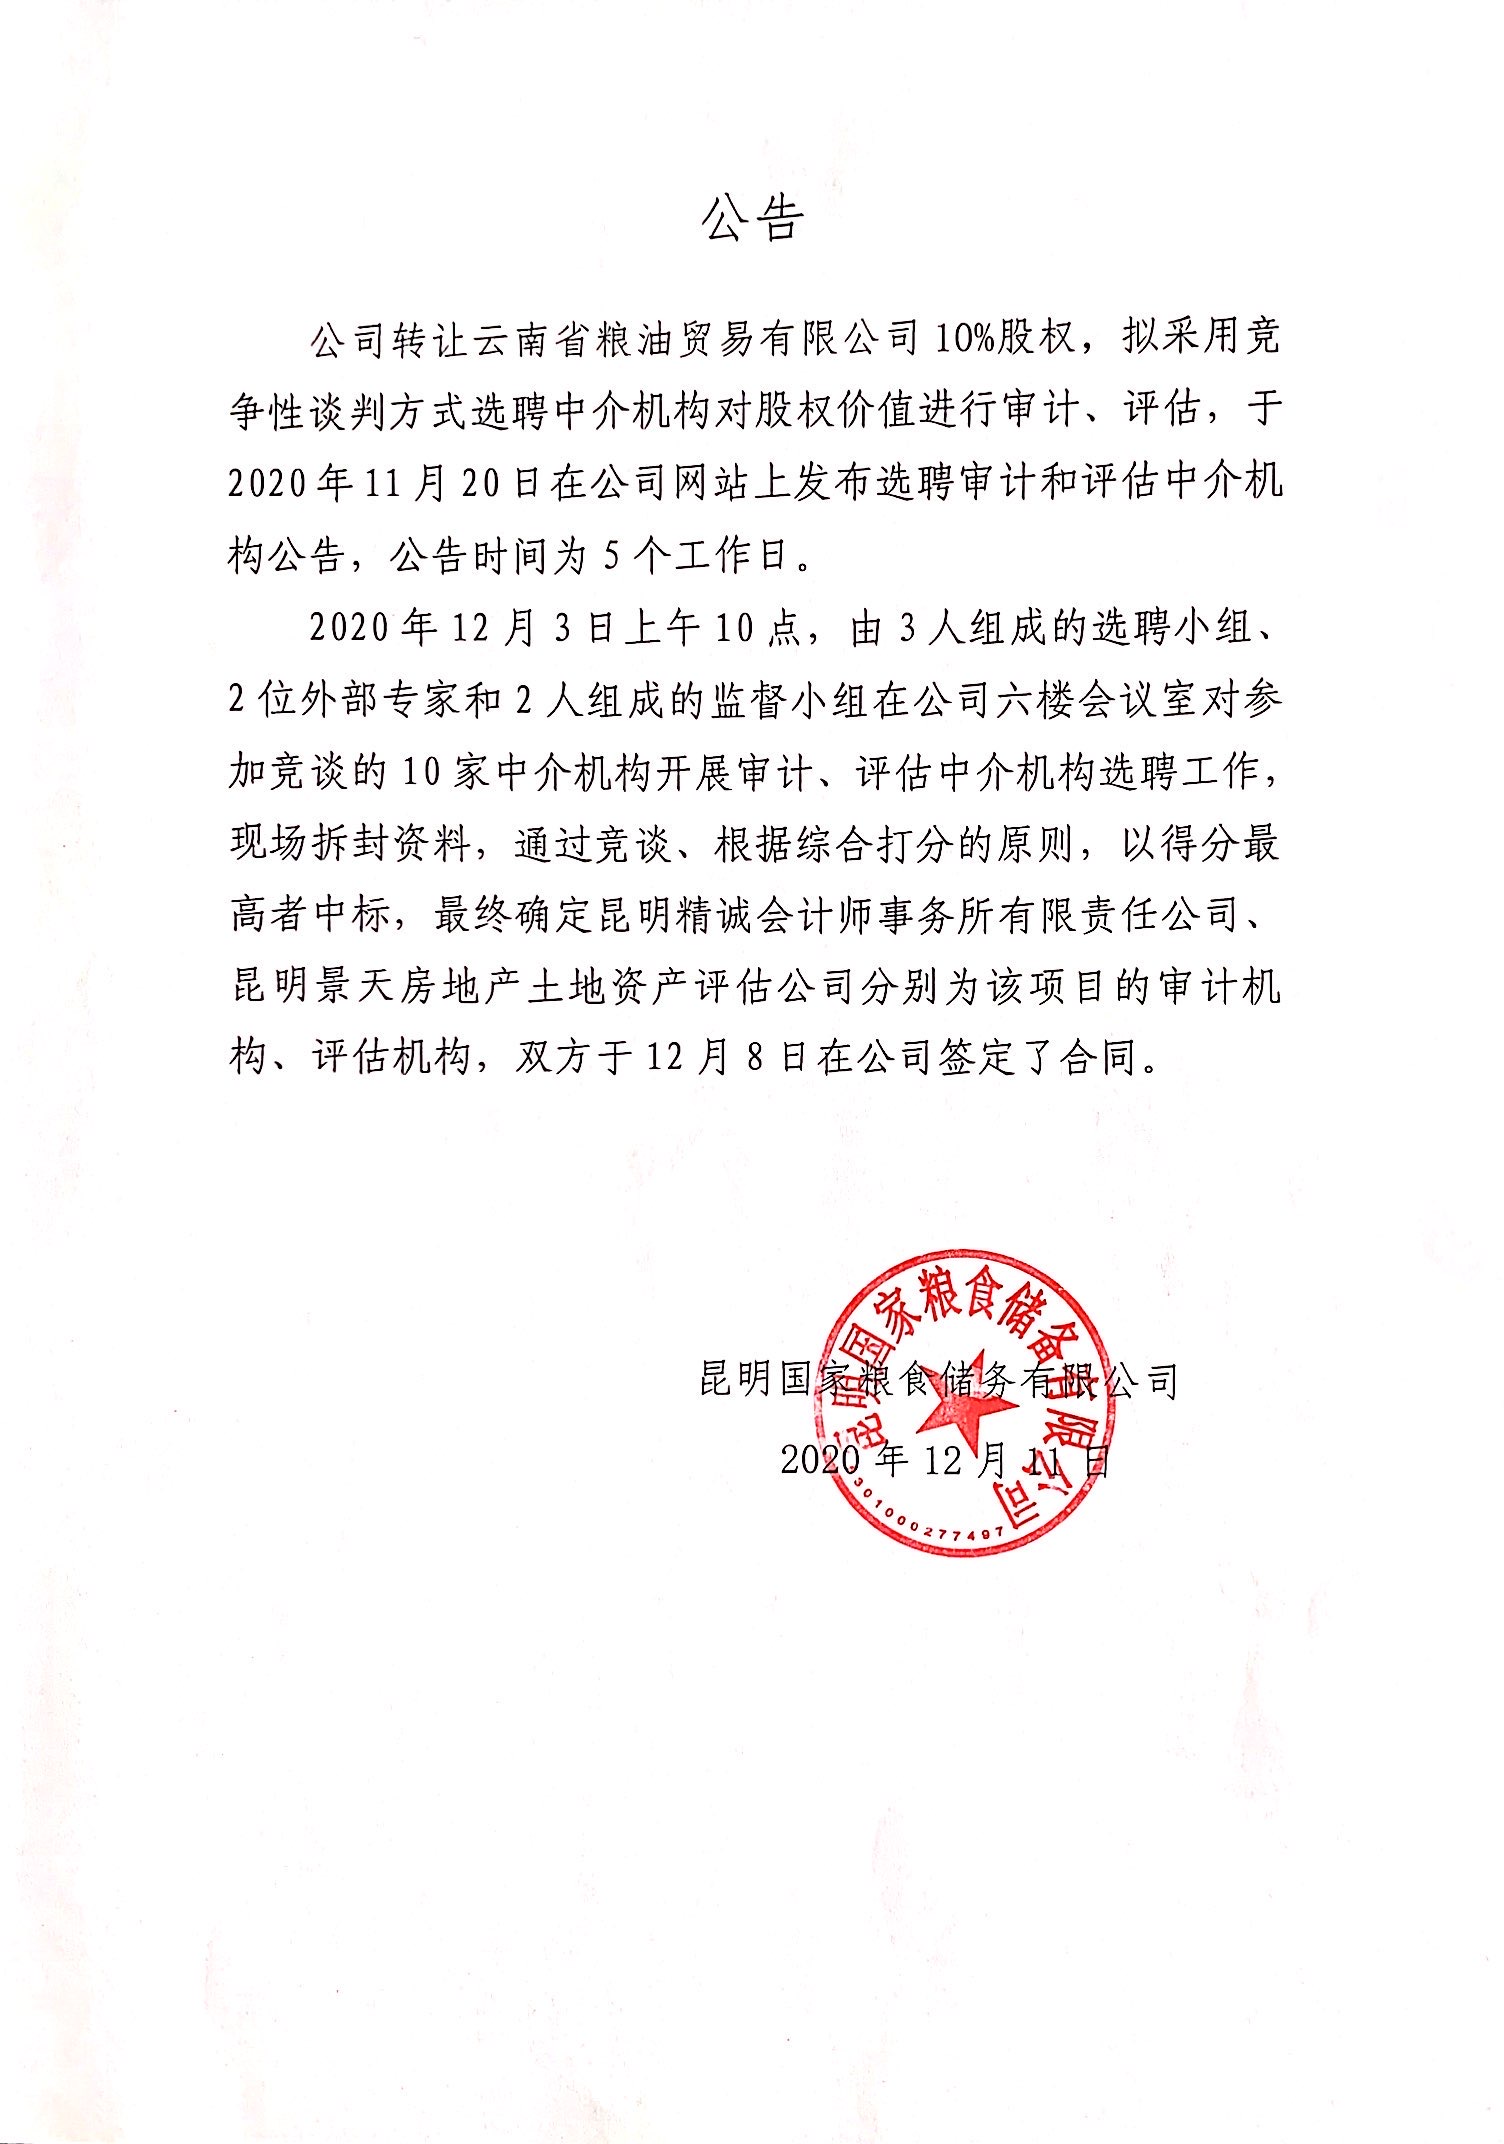 公司转让云南省粮油贸易有限公司股权的公告